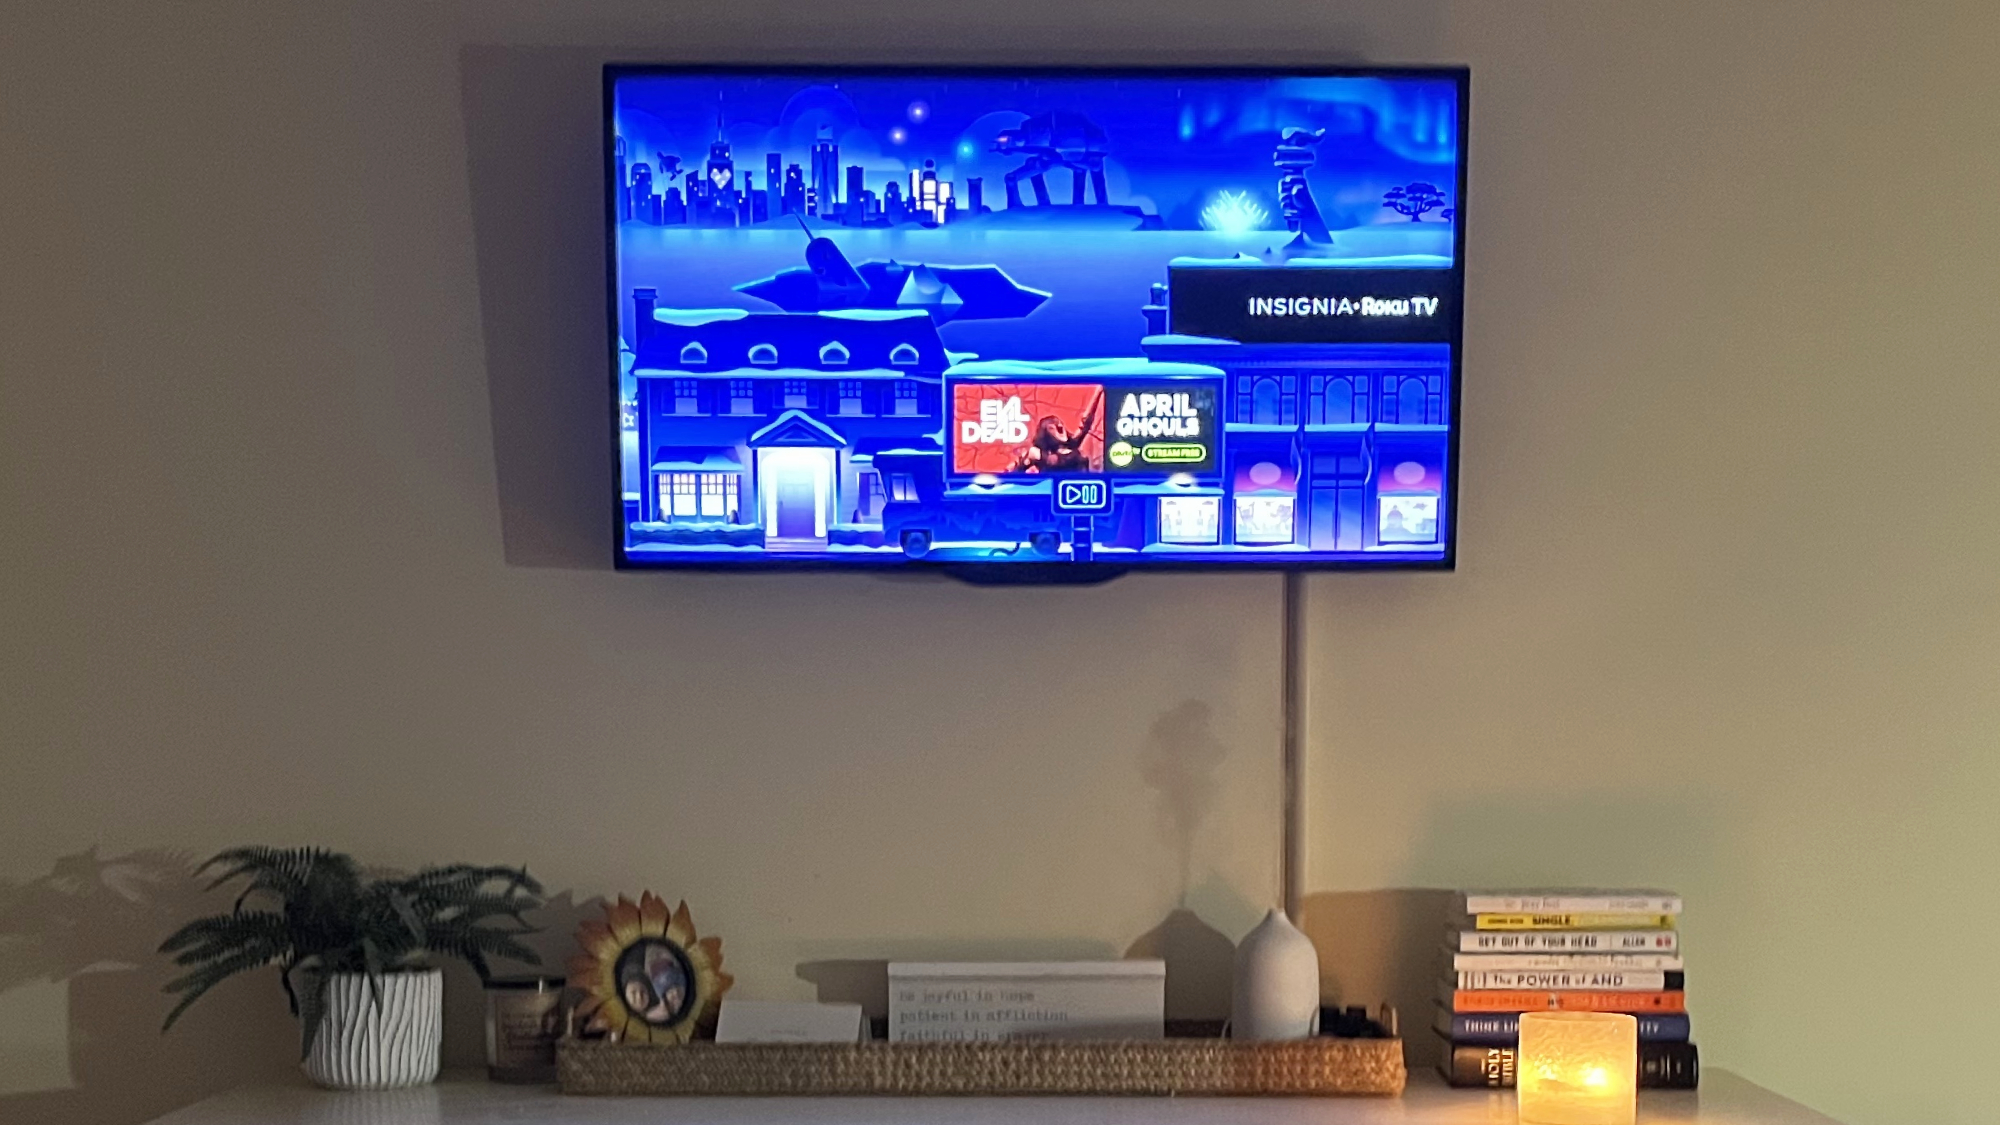 Roku City displays on bedroom smart TV